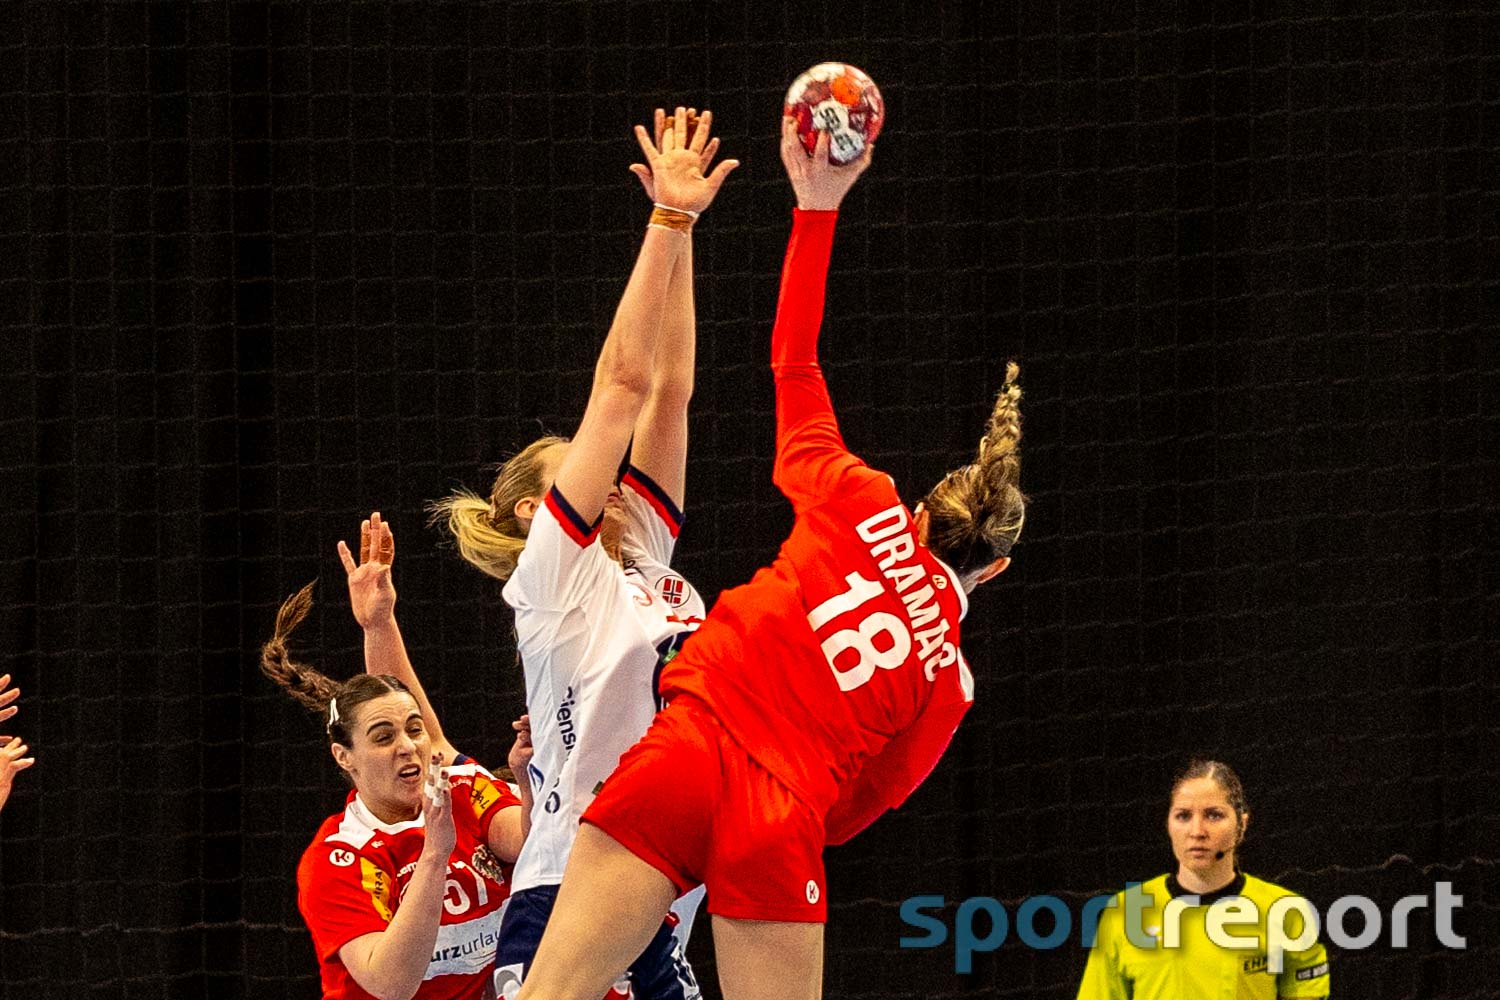 Aufmacherbild für Handball-Artikel 